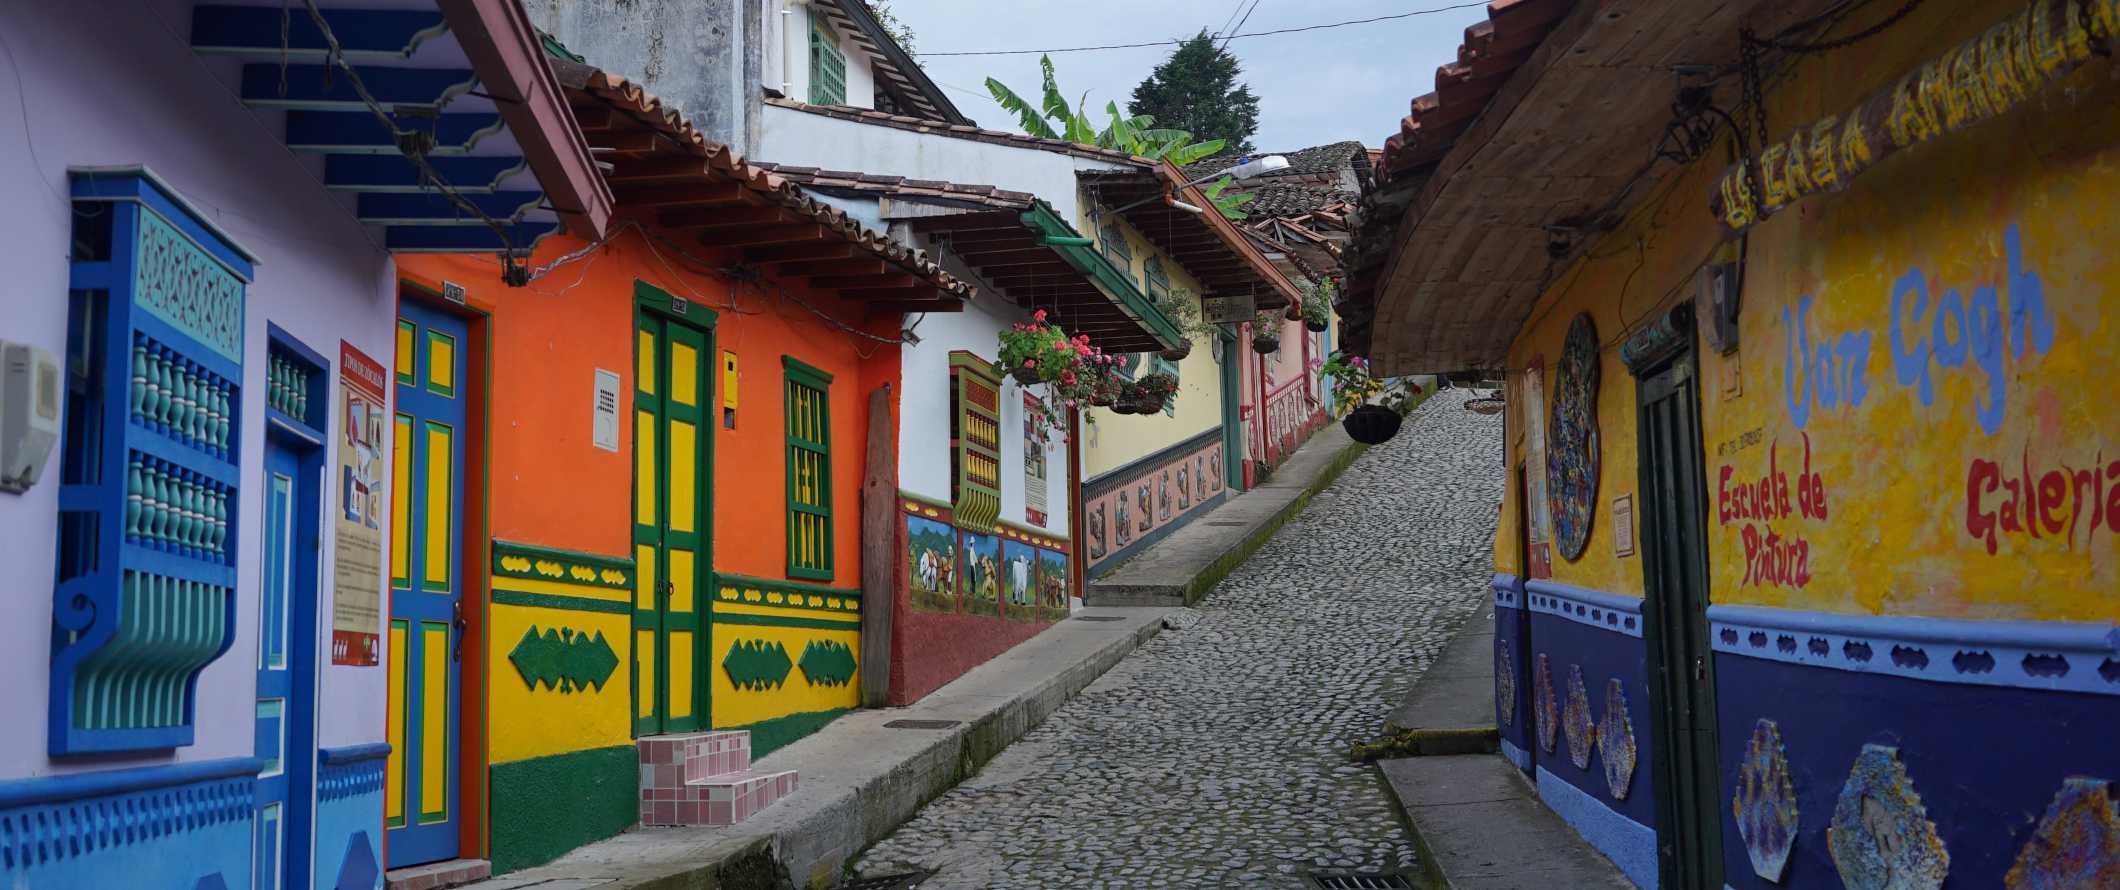 Ruas de paralelepípedos repletas de casas antigas coloridas na cidade de Guatape, perto de Medellín, Colômbia